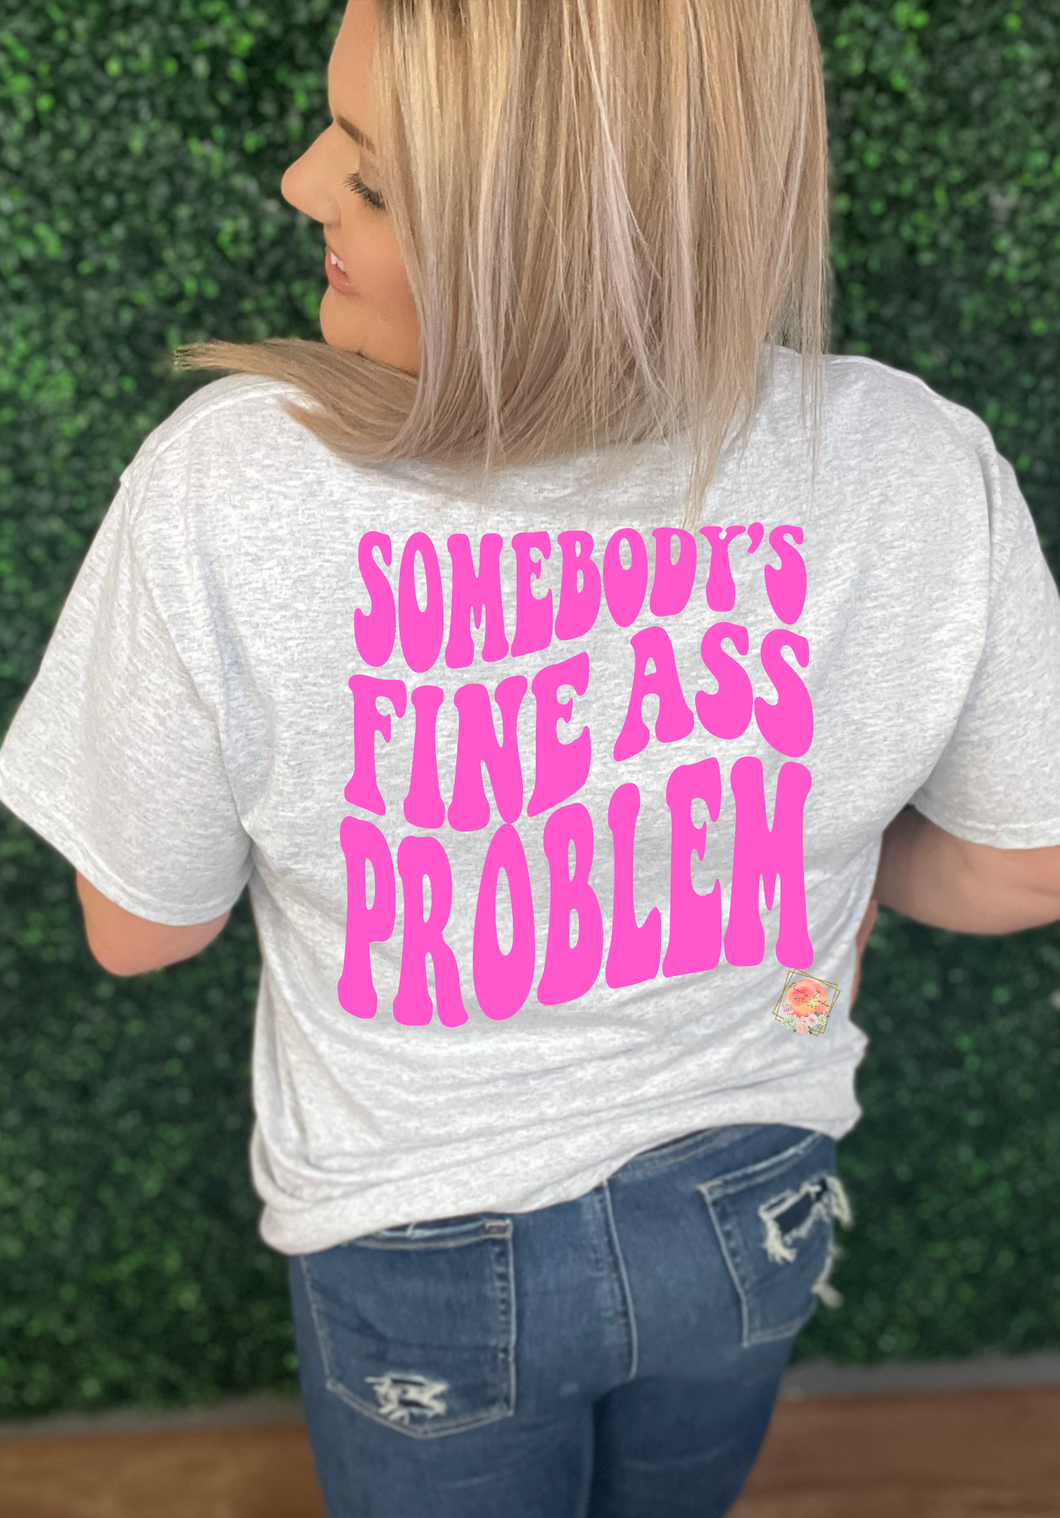 Somebody’s fine ass problem